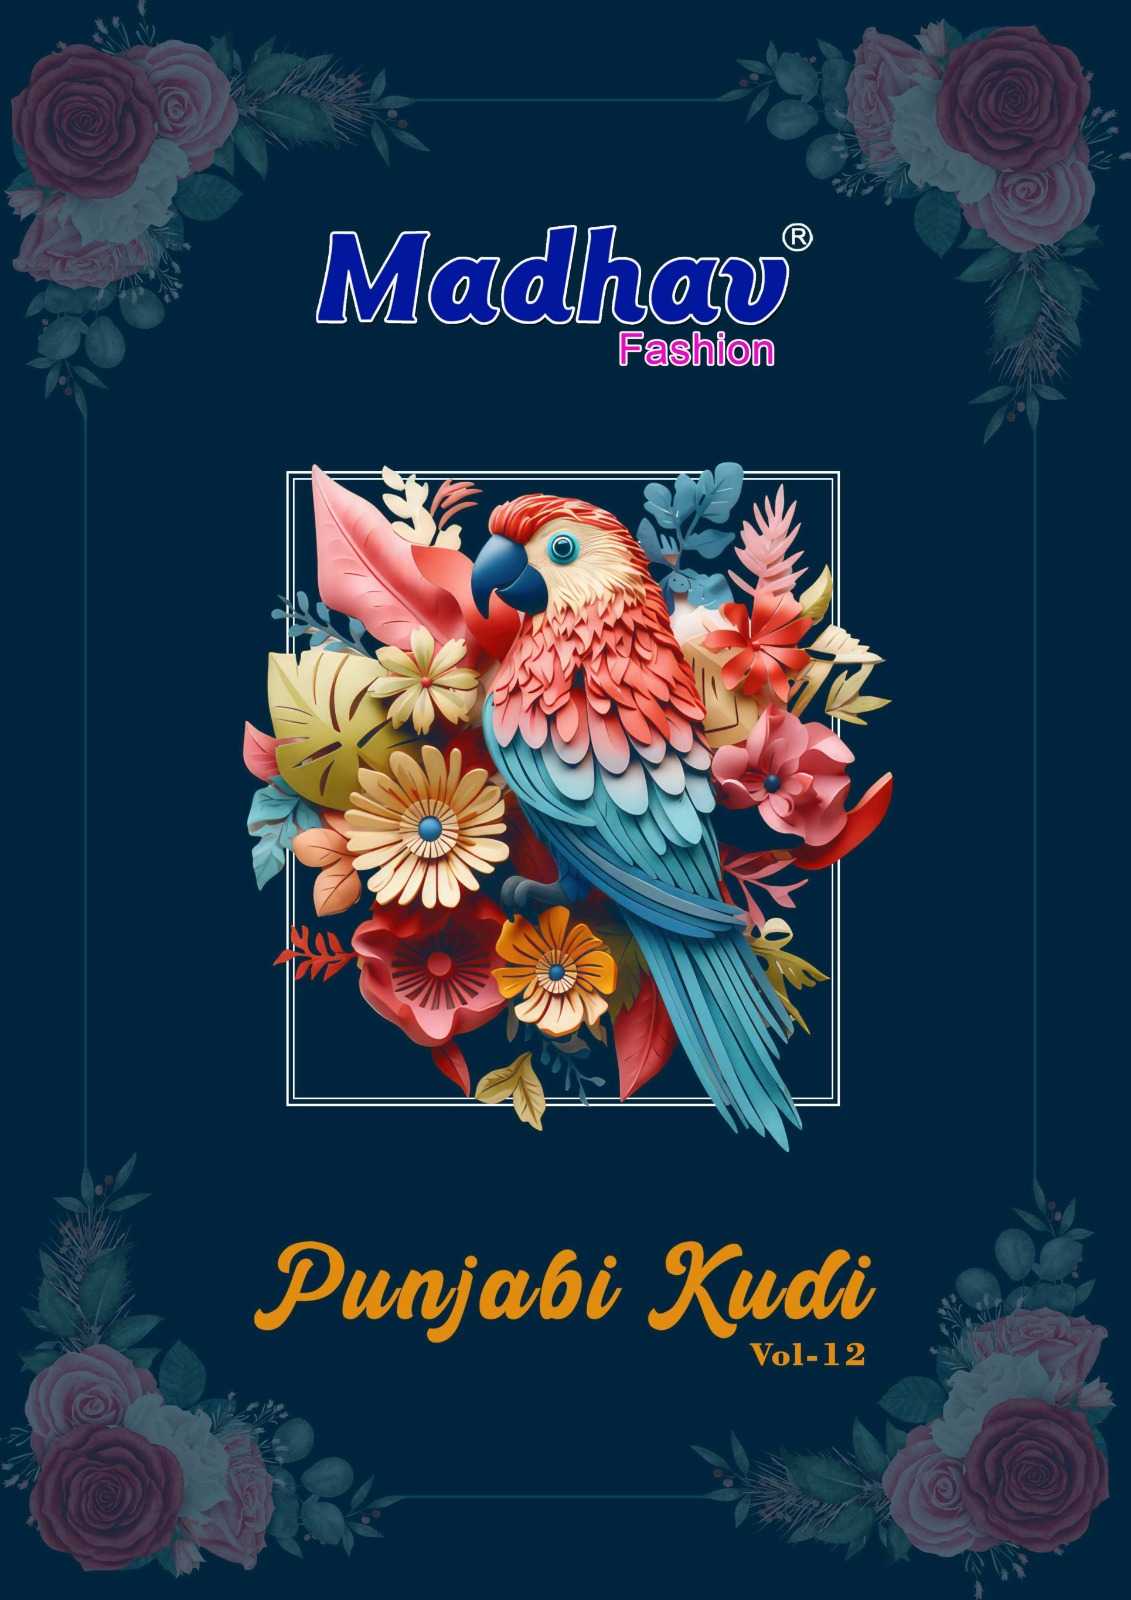 punjabi kudi vol 12 by madhav fashion readymade cotton patiala salwar suit catalog